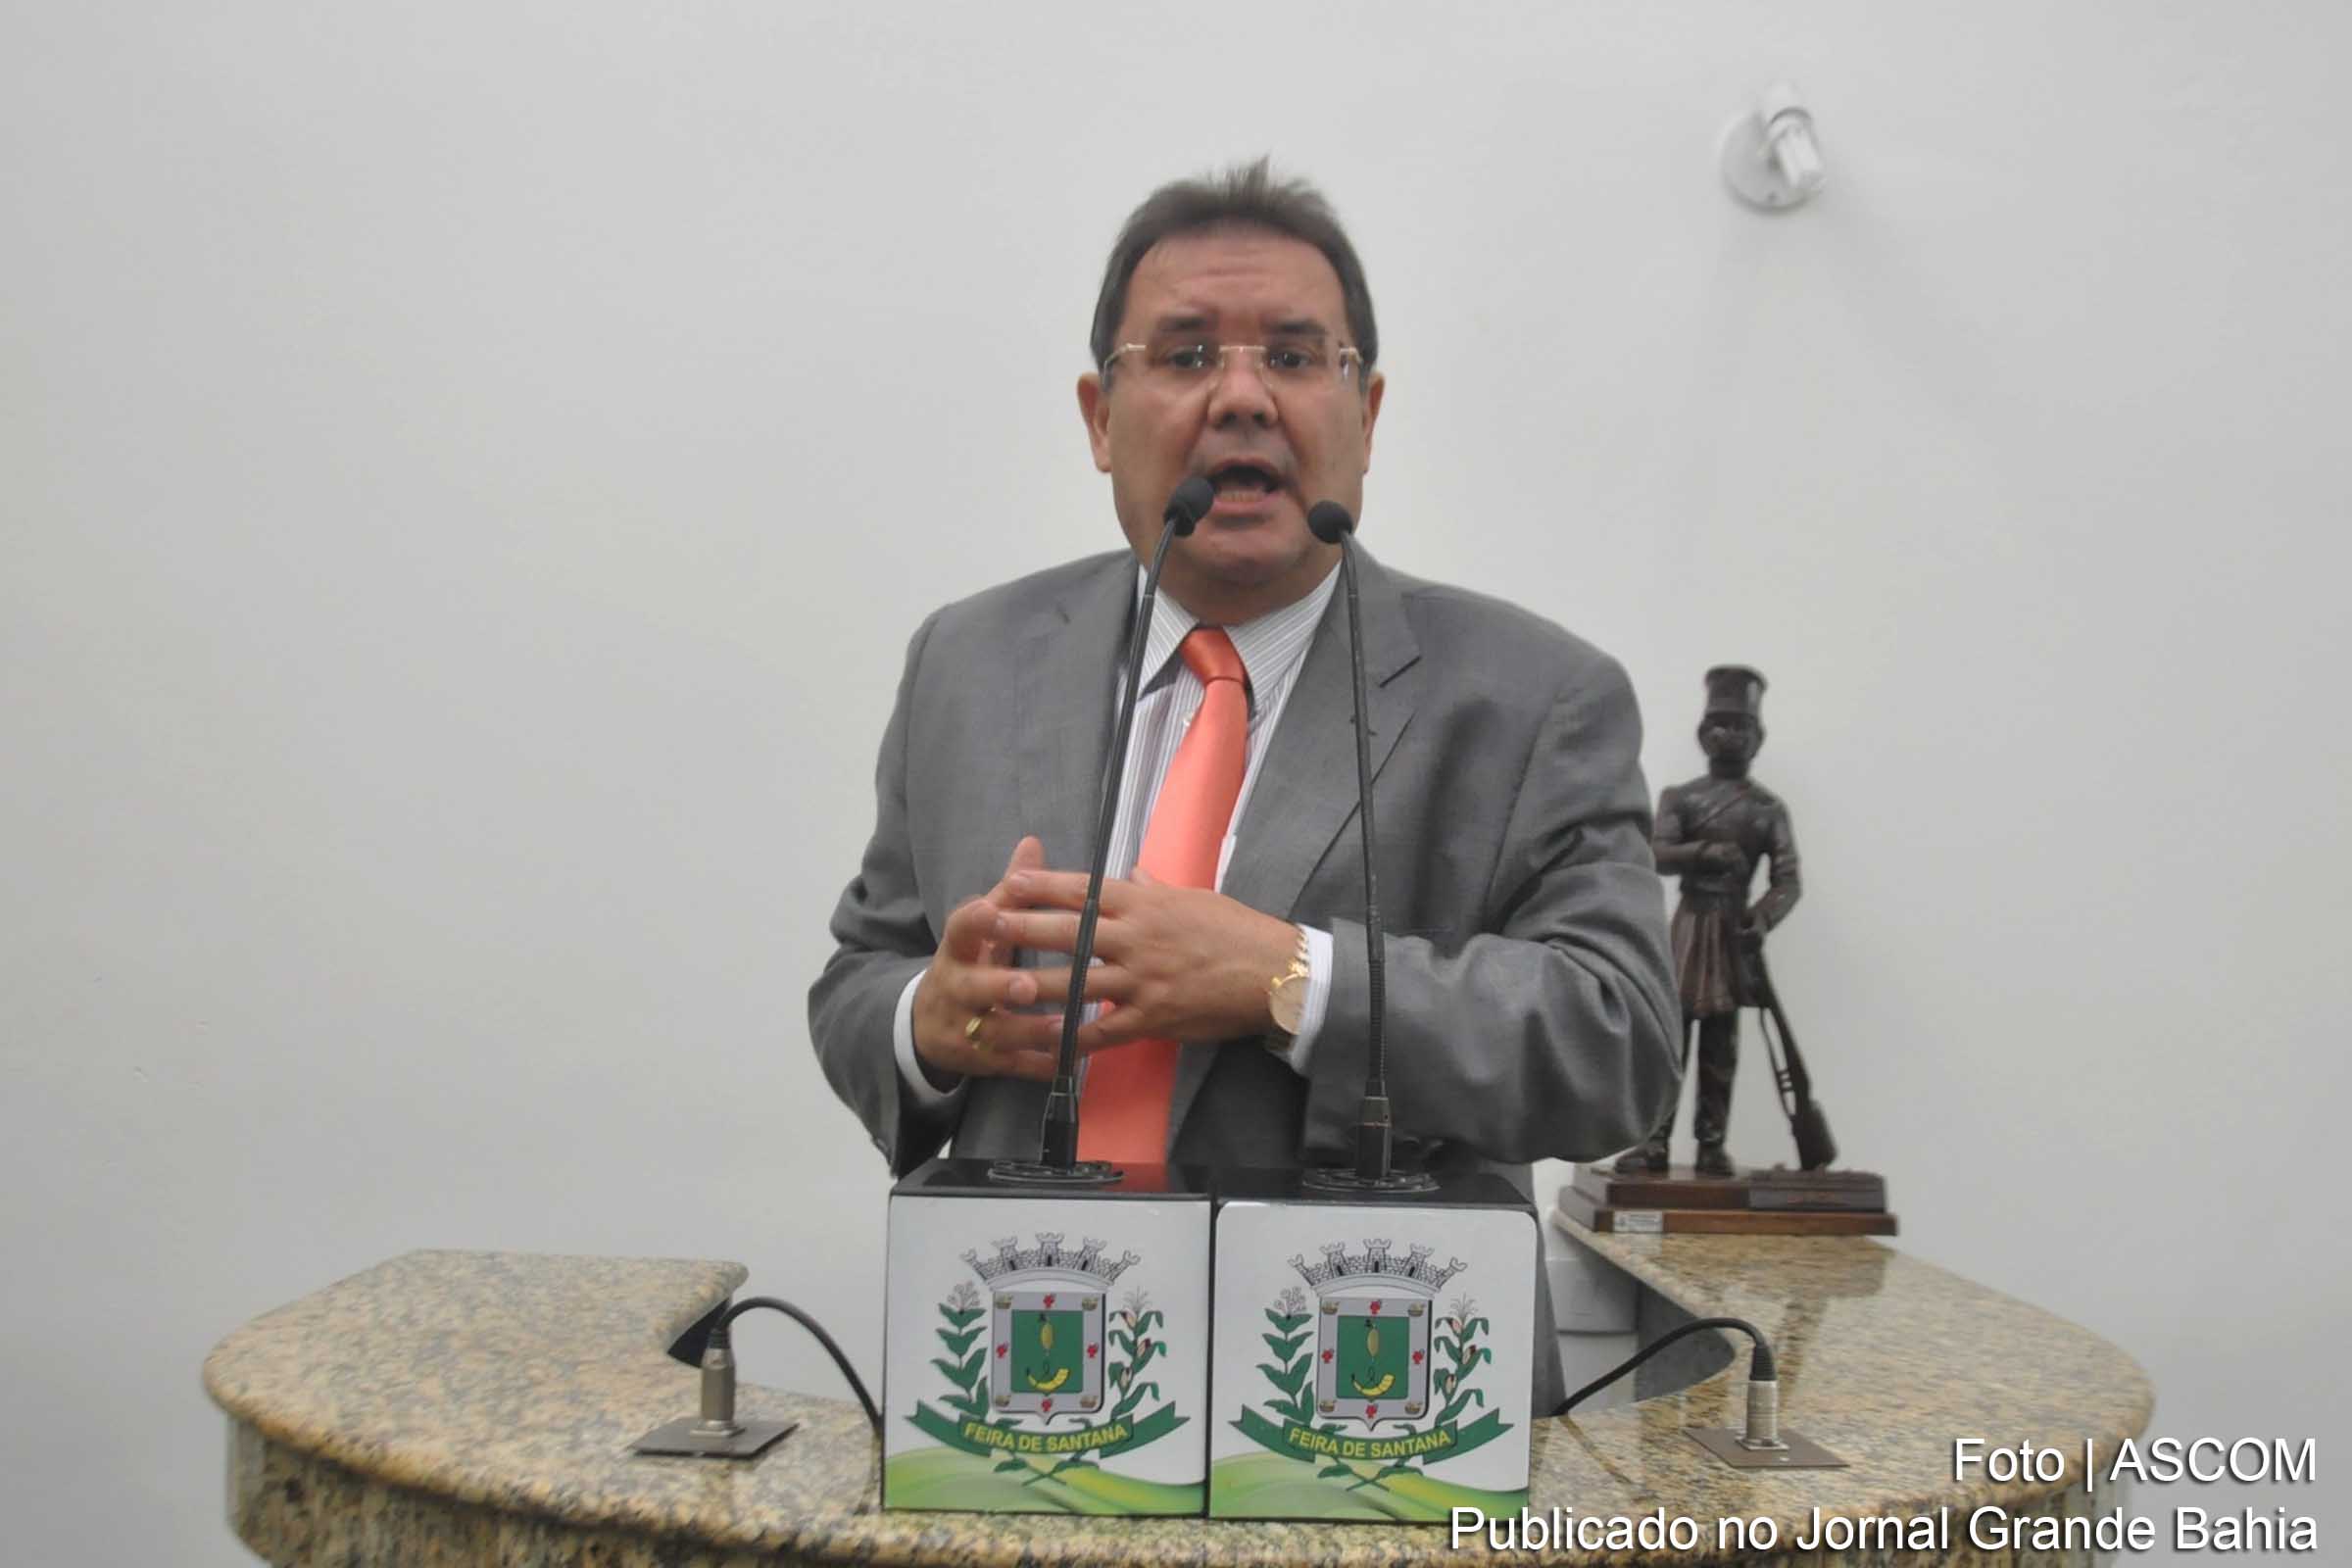 Welligton Andrade de Jesus é filiada ao PSDB e participou do pleito de 2016 através da coligação ‘O trabalho continua’, formada pelo PRB, DEM, PSL, PSDB e PMB. O vereador não foi reeleito e ficou em 29º lugar, obtendo 3.063 votos.